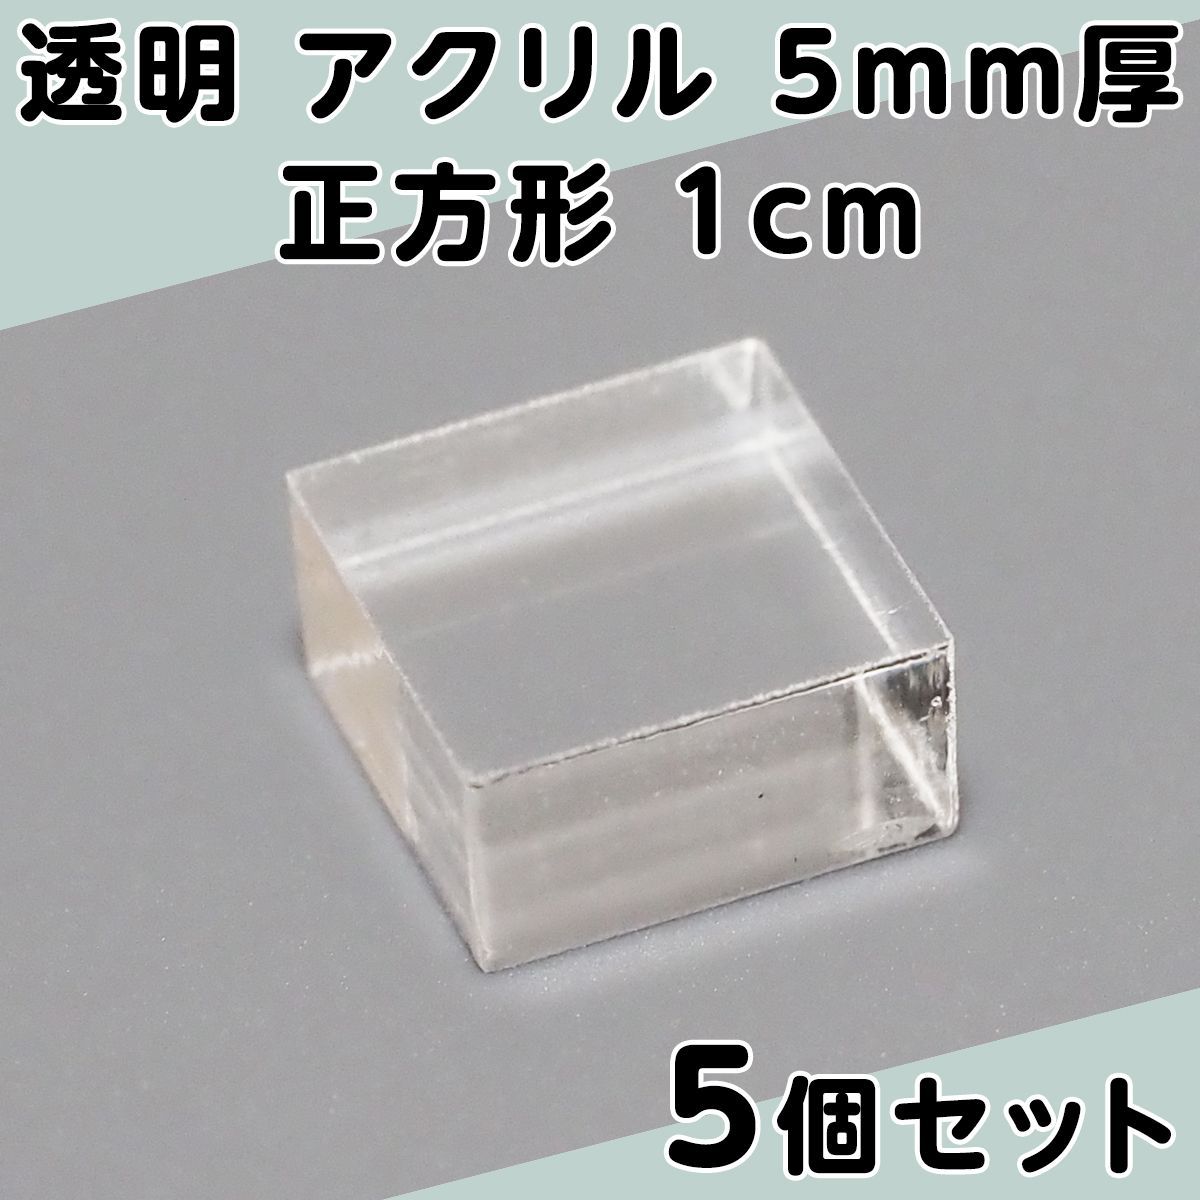 透明 アクリル 5mm厚 正方形 1cm 5個セット - メルカリ